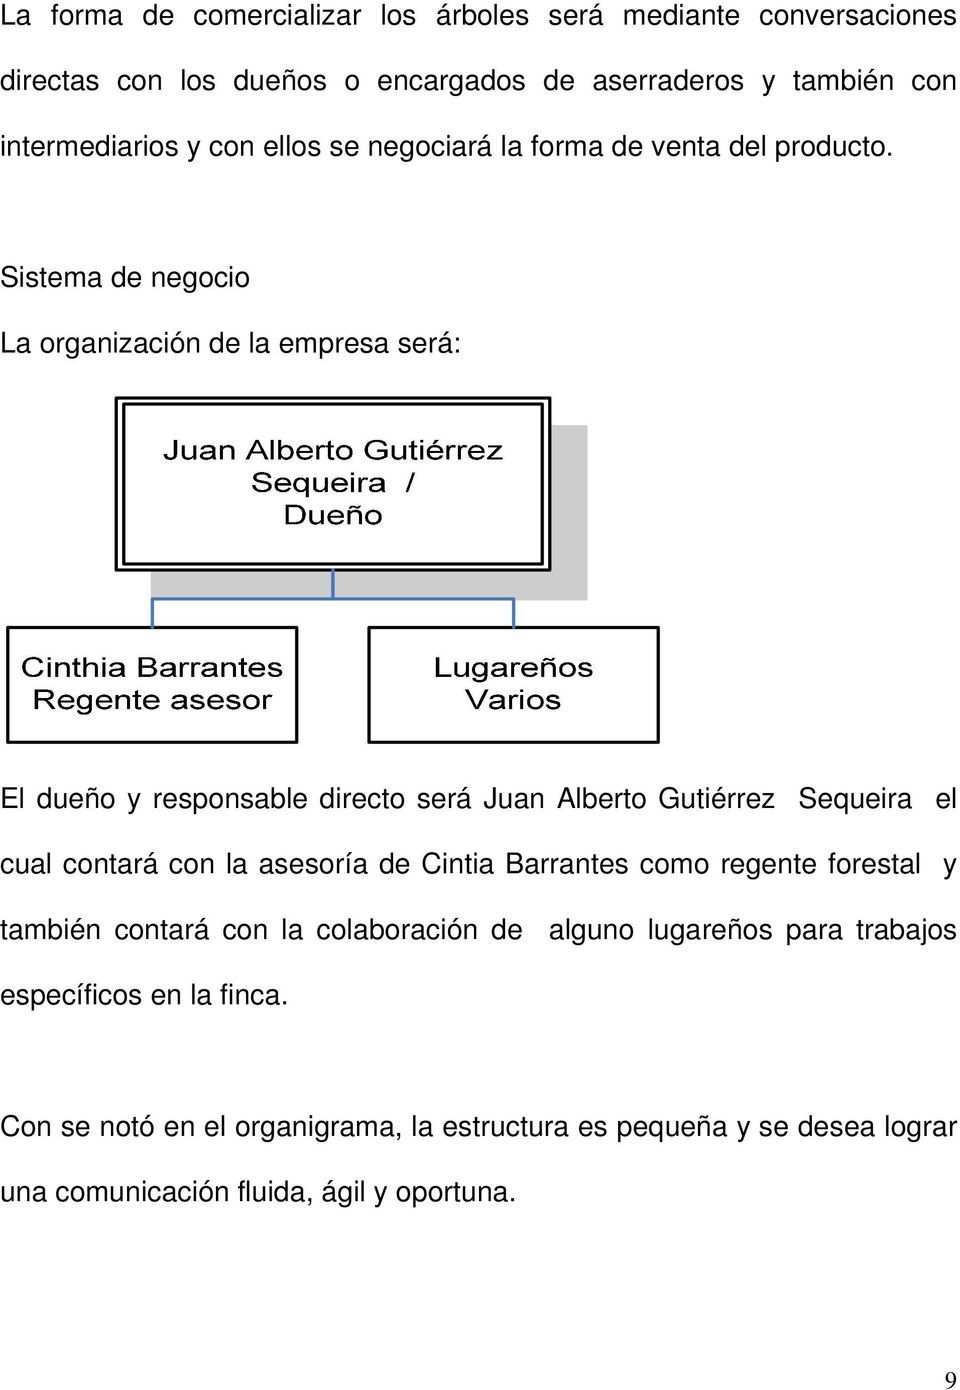 Sistema de negocio La organización de la empresa será: El dueño y responsable directo será Juan Alberto Gutiérrez Sequeira el cual contará con la